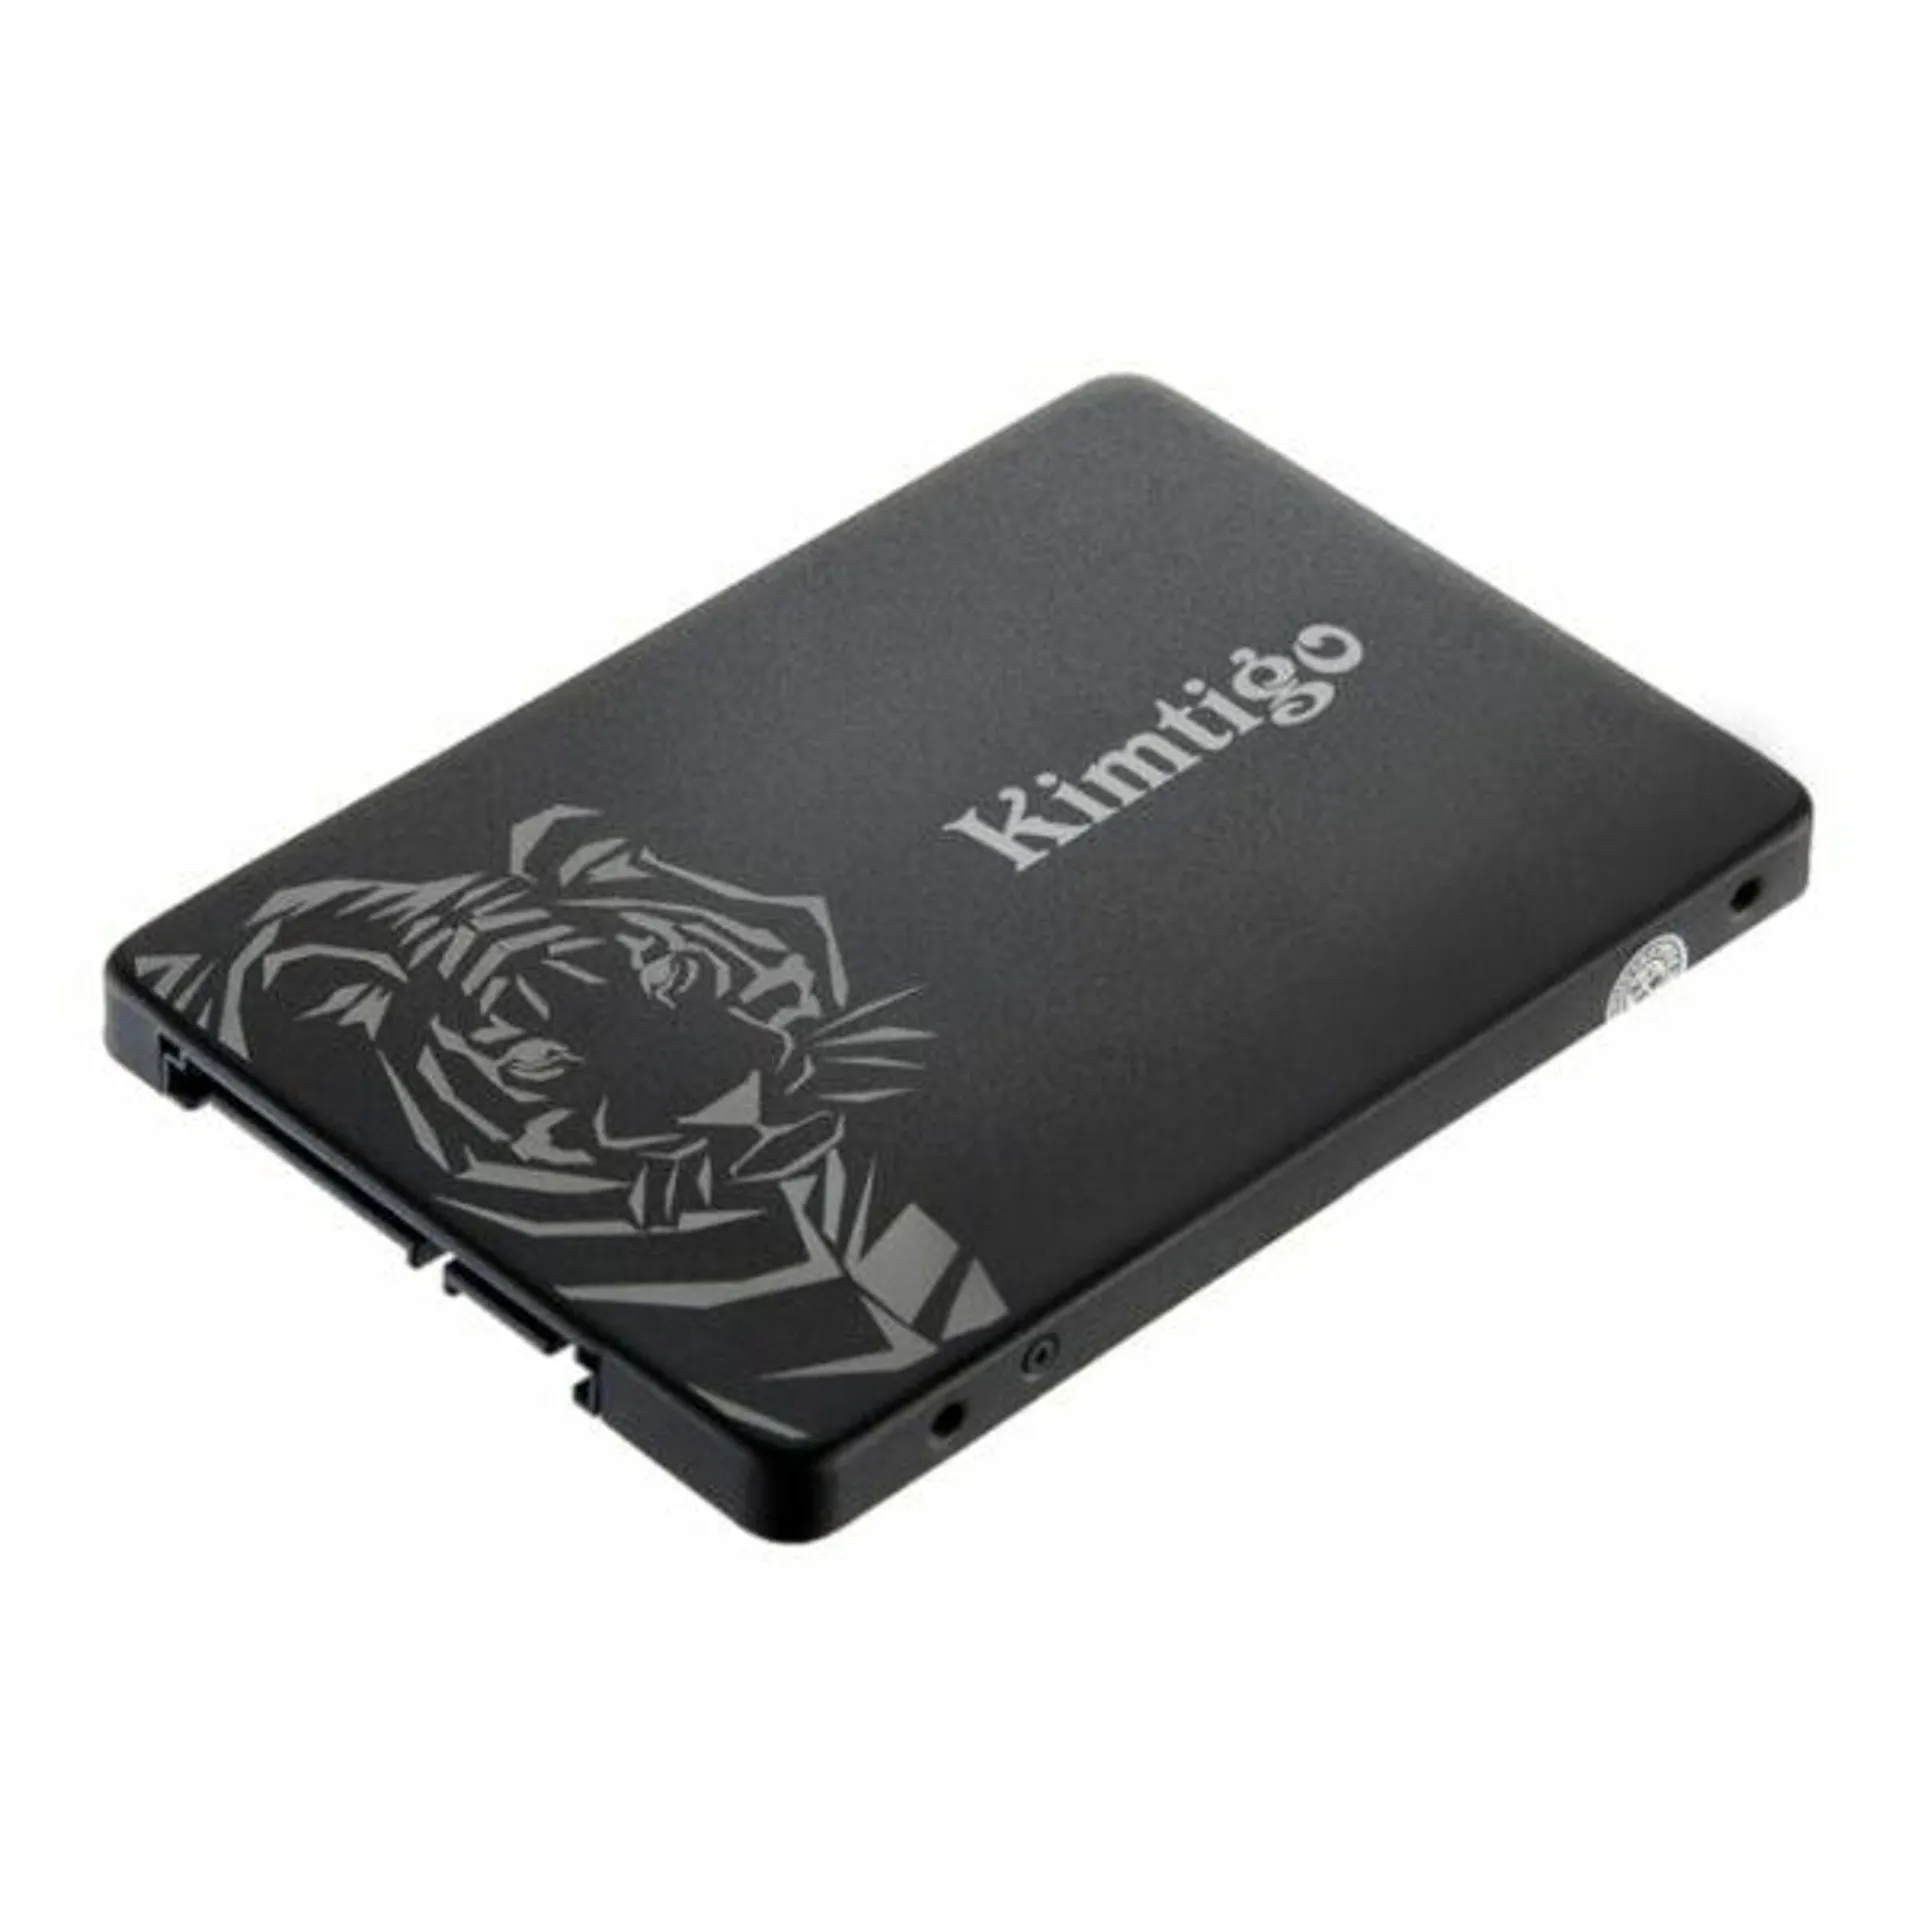 KIMTIGO K256 256GB 2.5″ SATA SSD